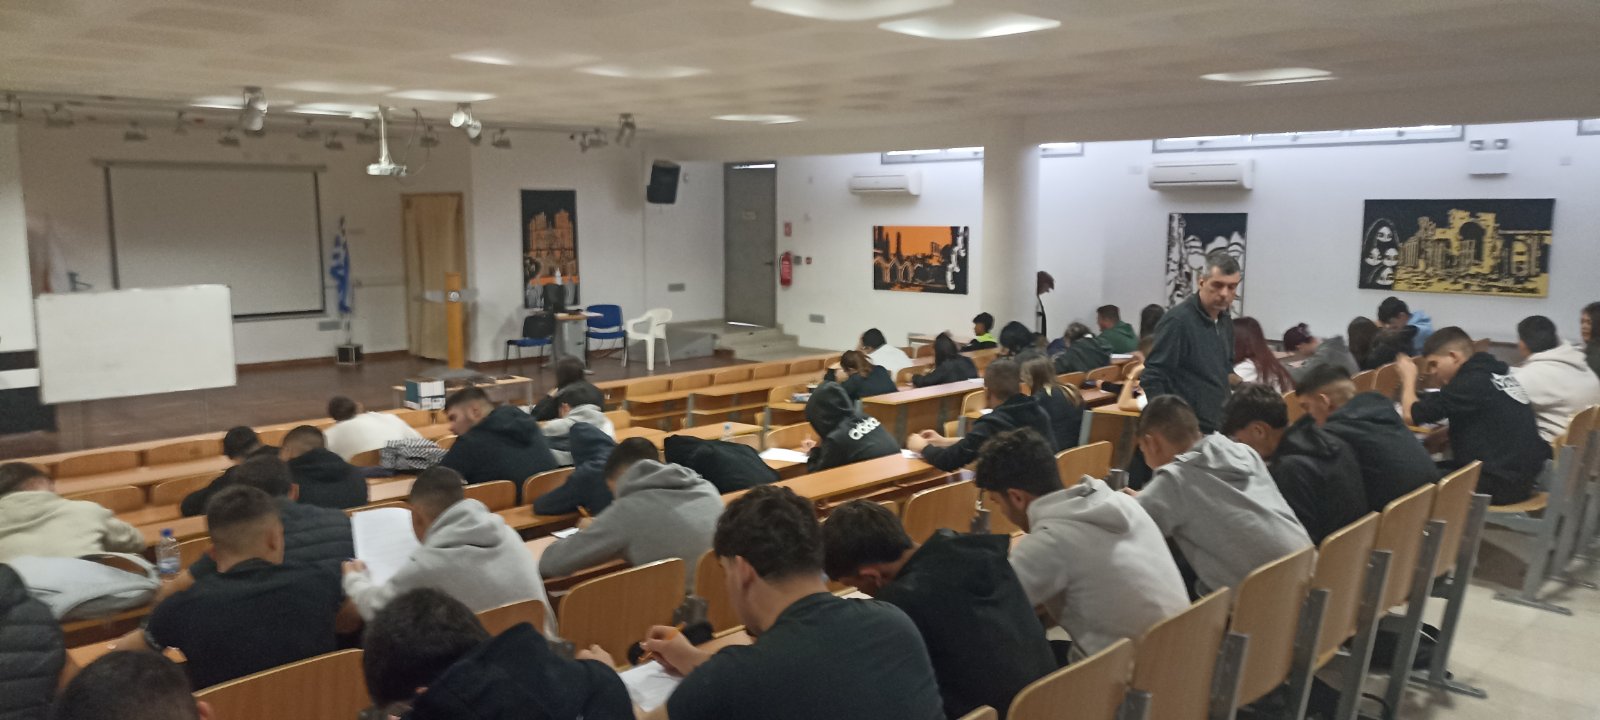 Τεχνική Σχολή Πάφου: 1ος Παγκύπριος Διαγωνισμός «Τη γλώσσα μού έδωσαν ελληνική»